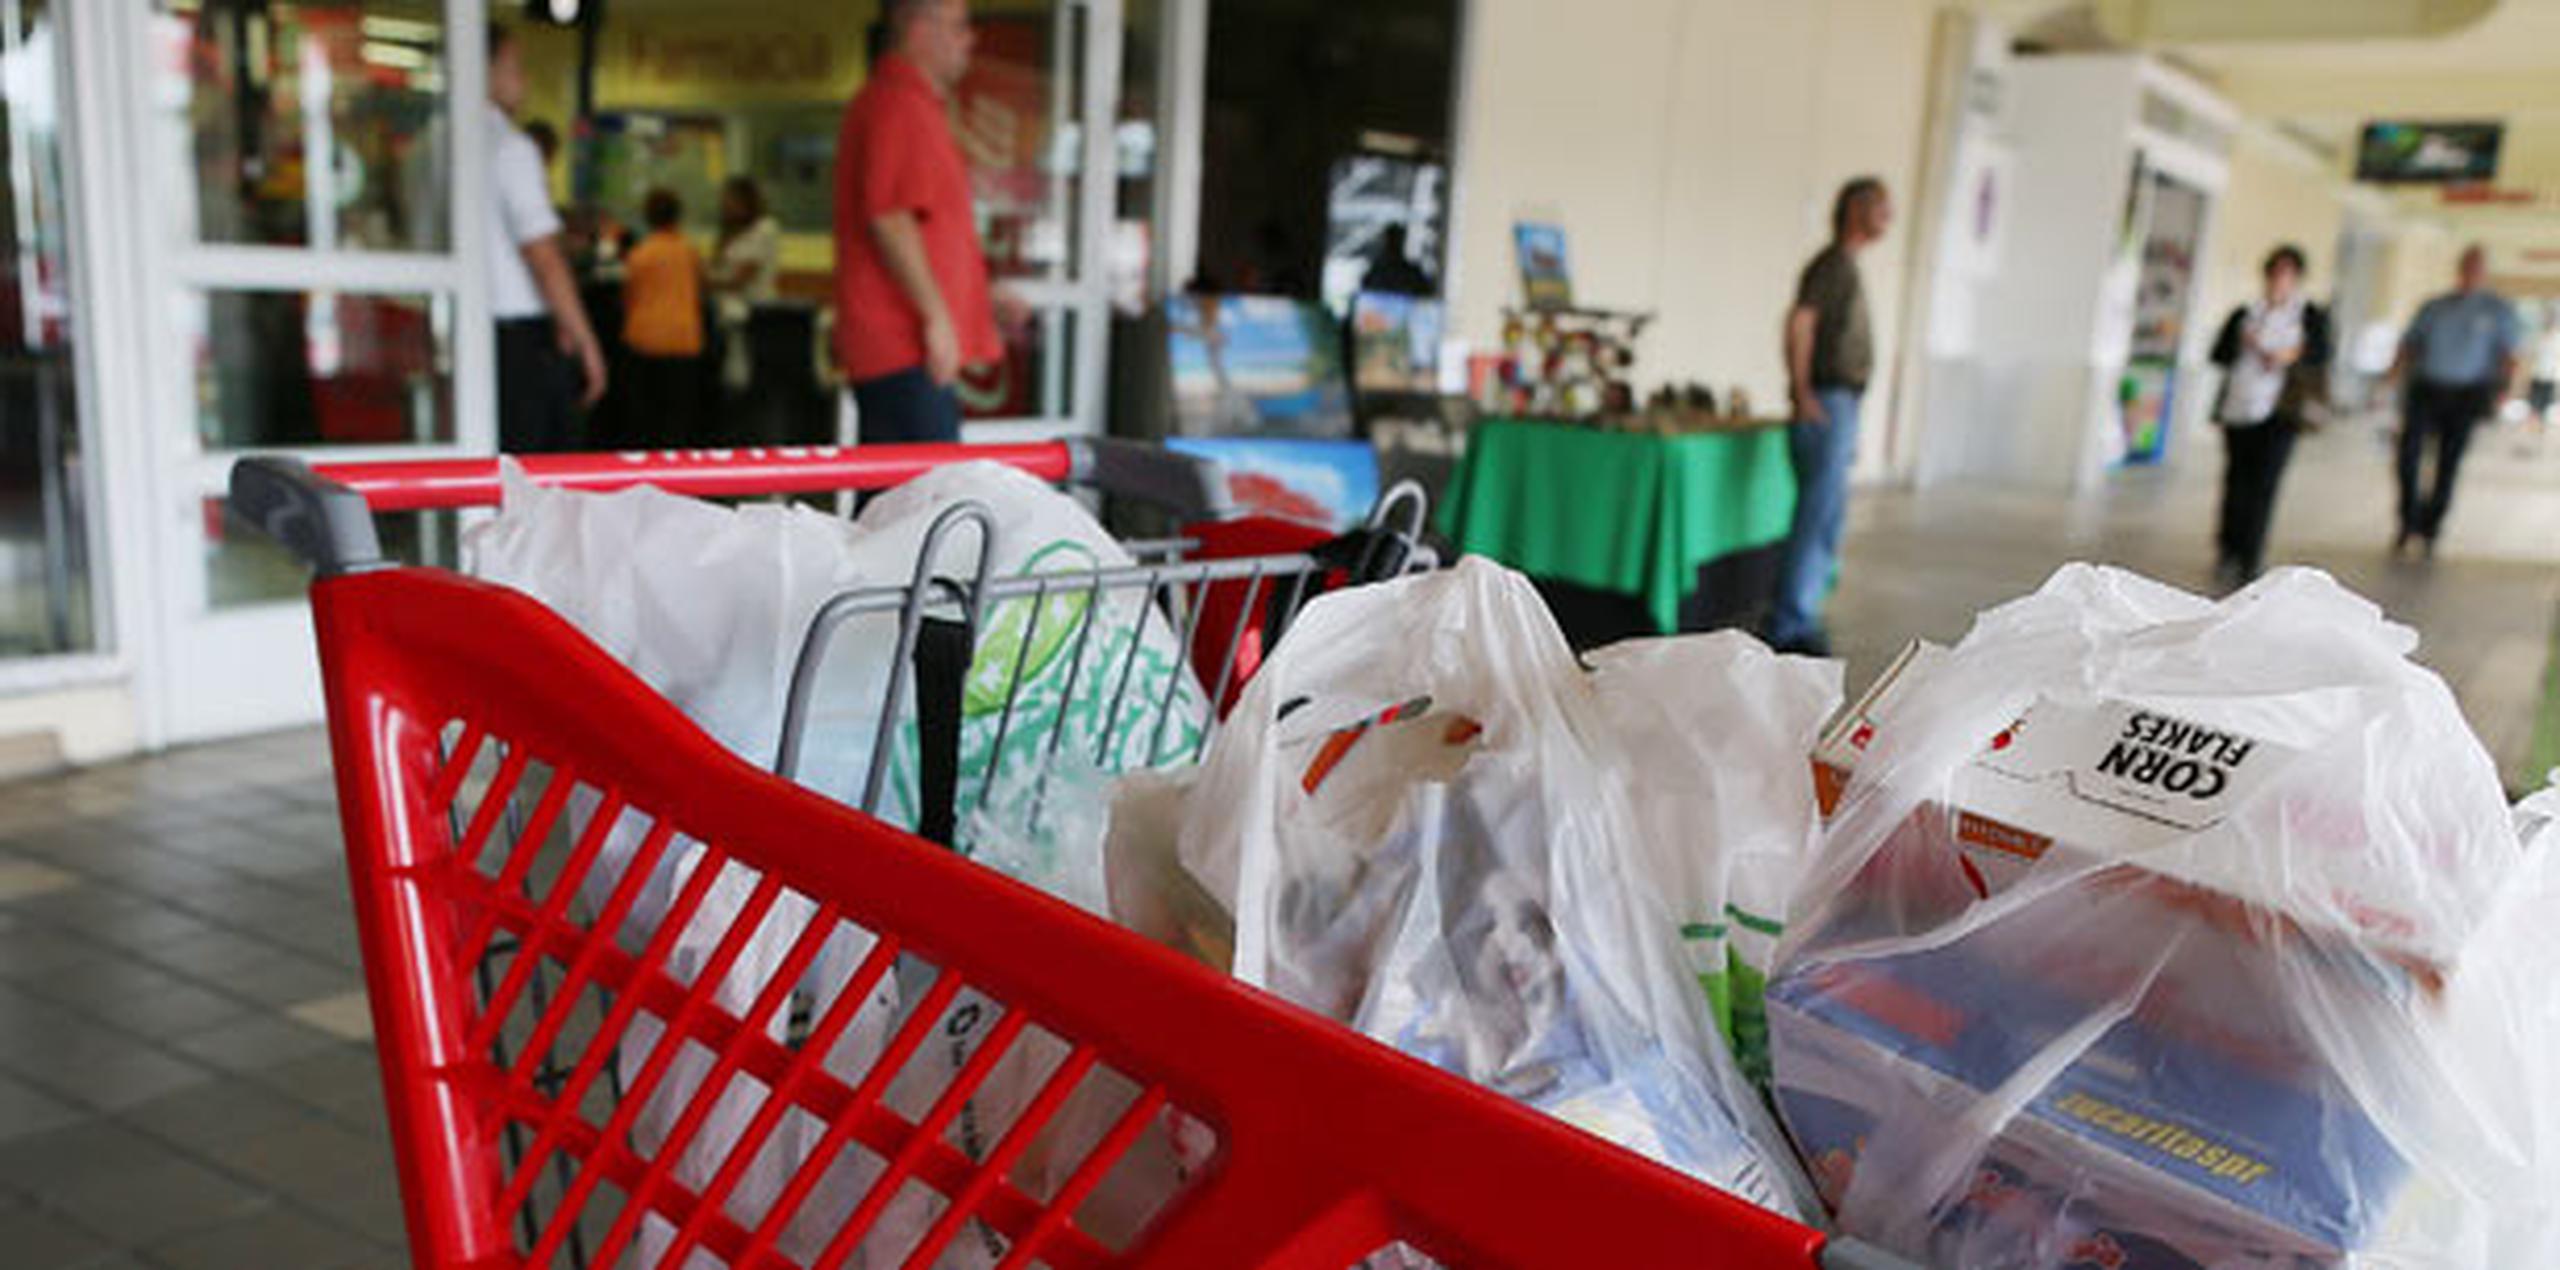 La tienda Walmart cerrará 269 tiendas, siete de ellas en Puerto Rico. (Archivo)